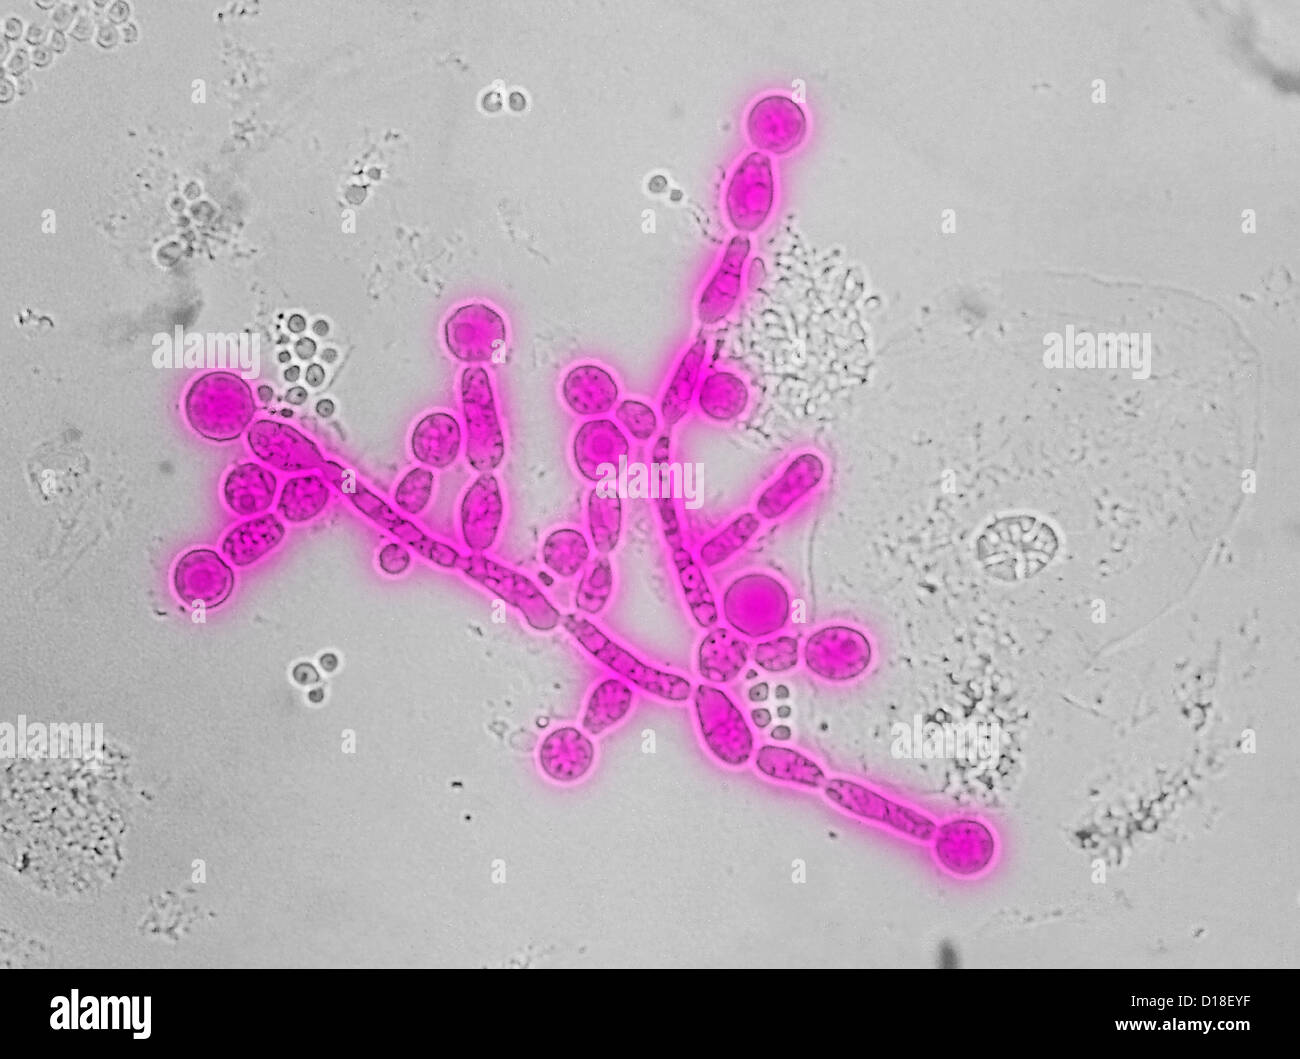 Electron micrograph of Candida chlamydospores Stock Photo